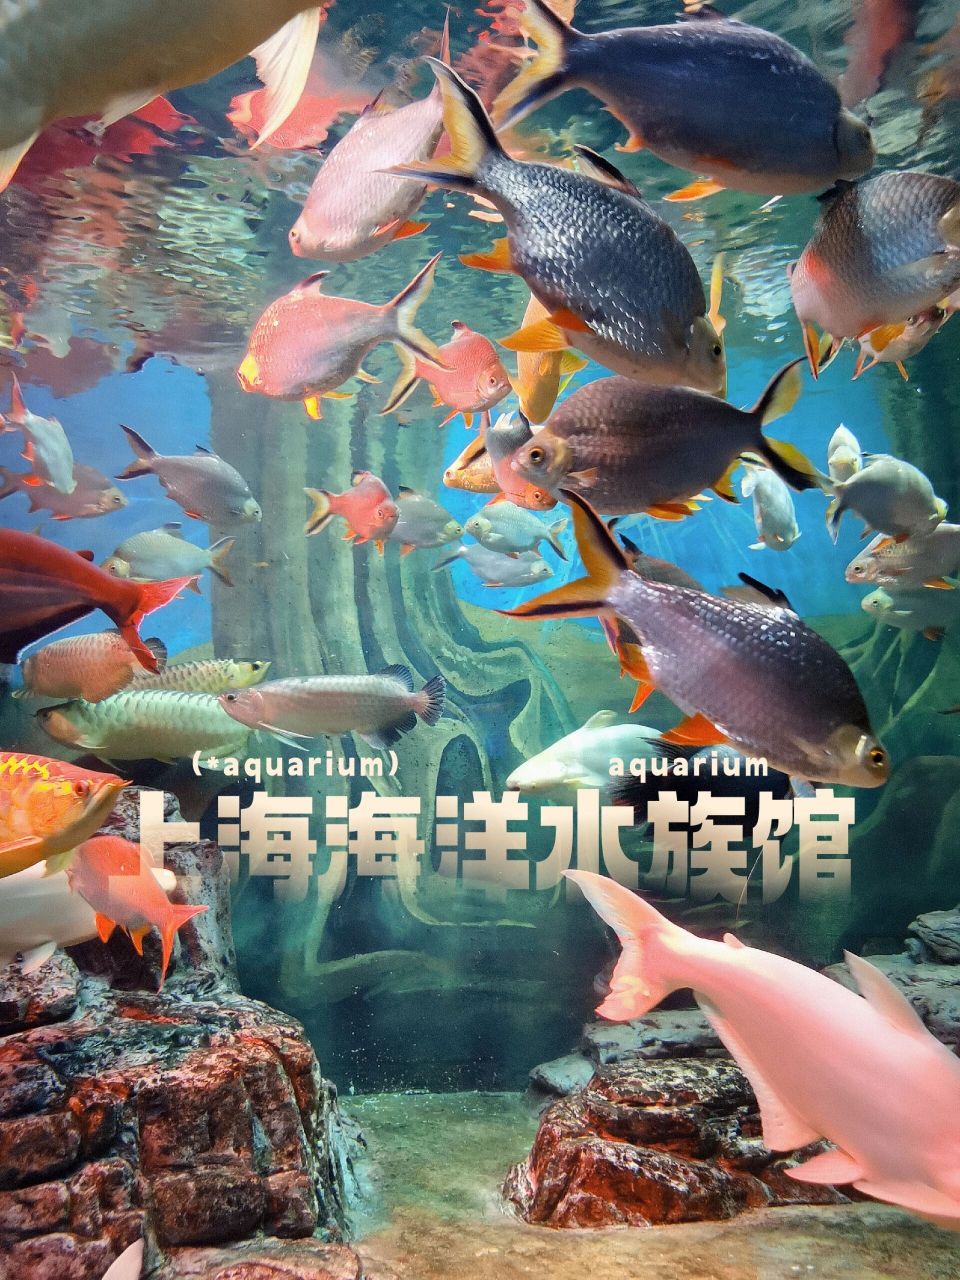 上海海洋水族馆简介图片